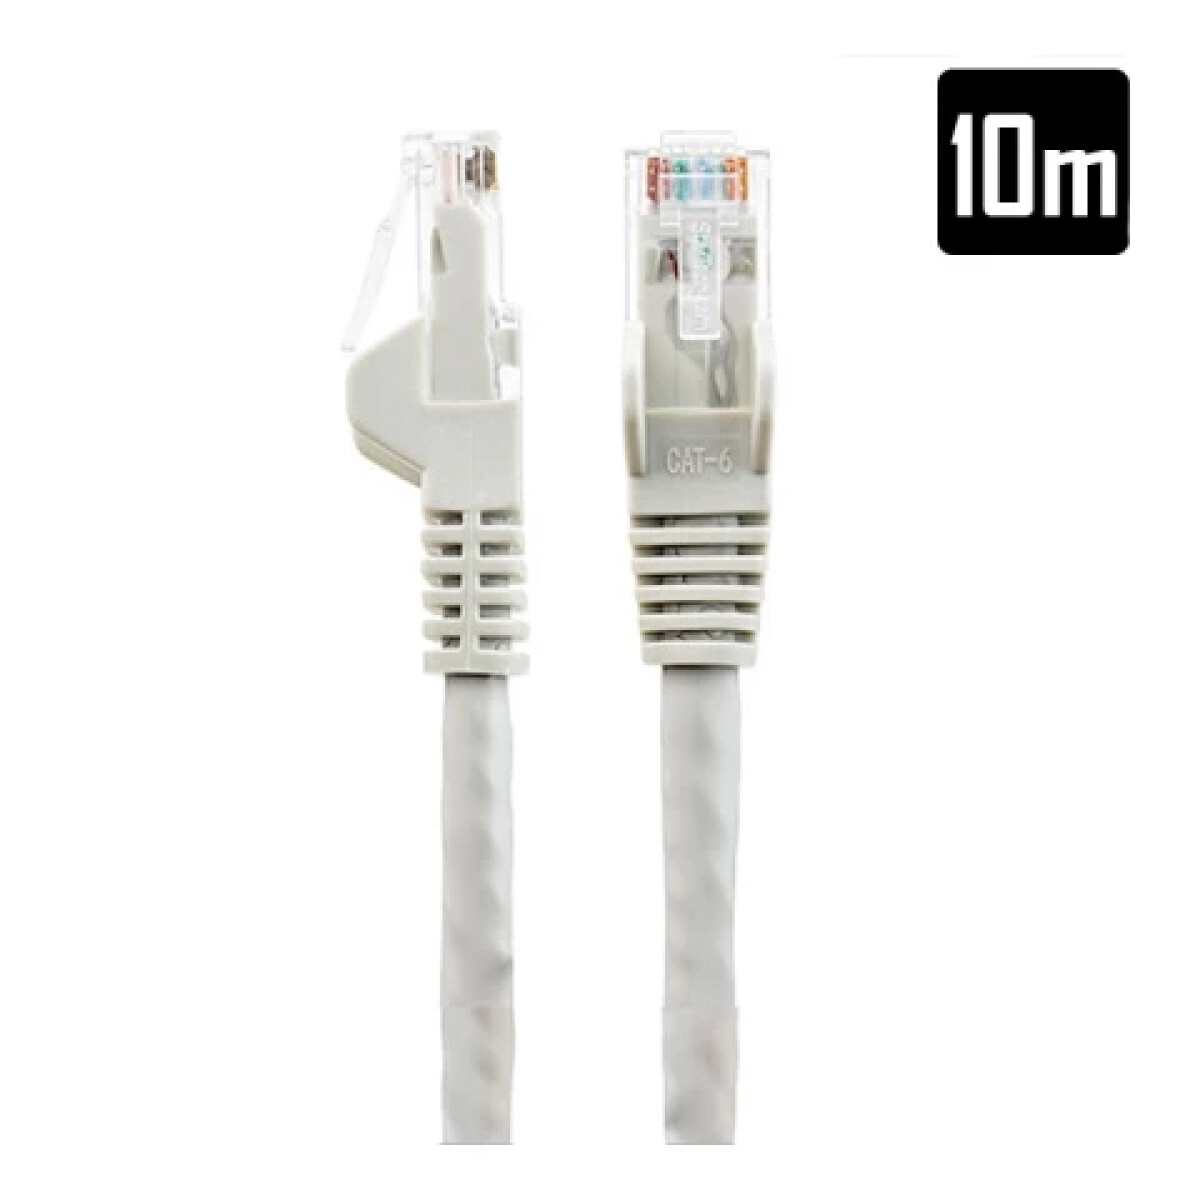 Cable de red premium 10M - Unica 